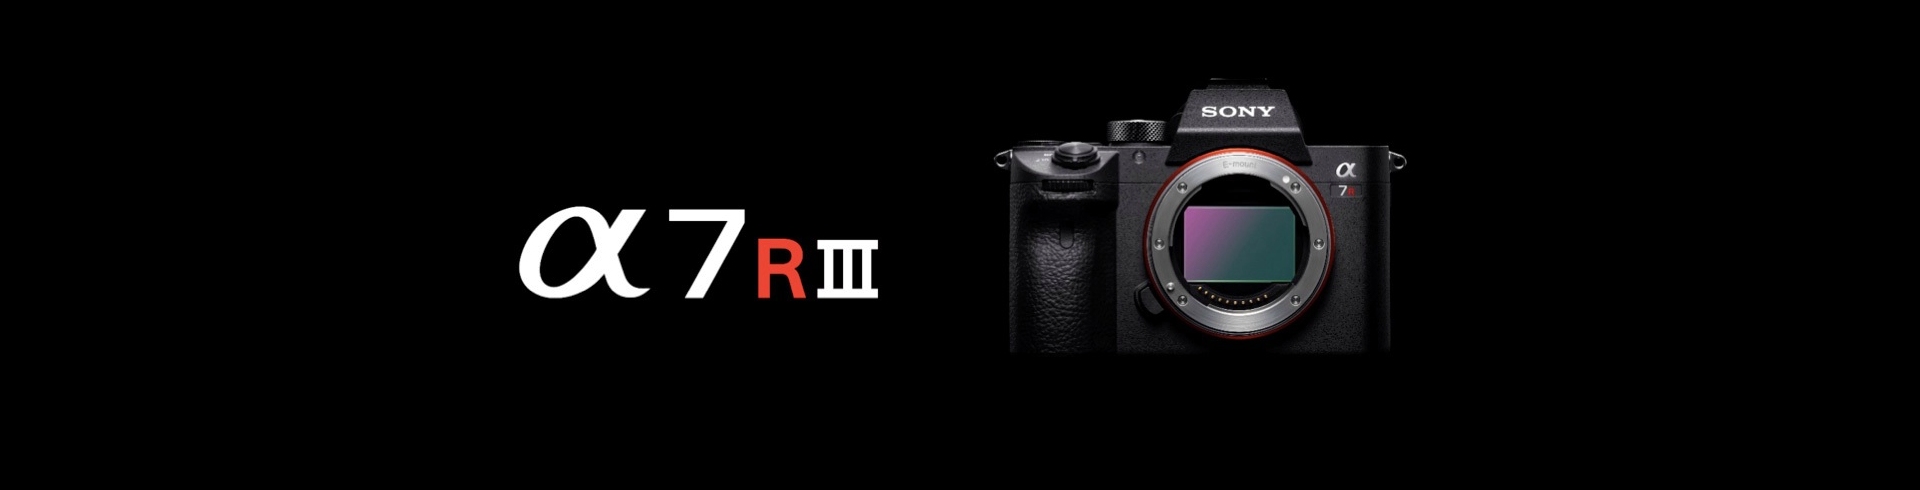 Immagini campione Sony A7R III (ILCE-7RM3)